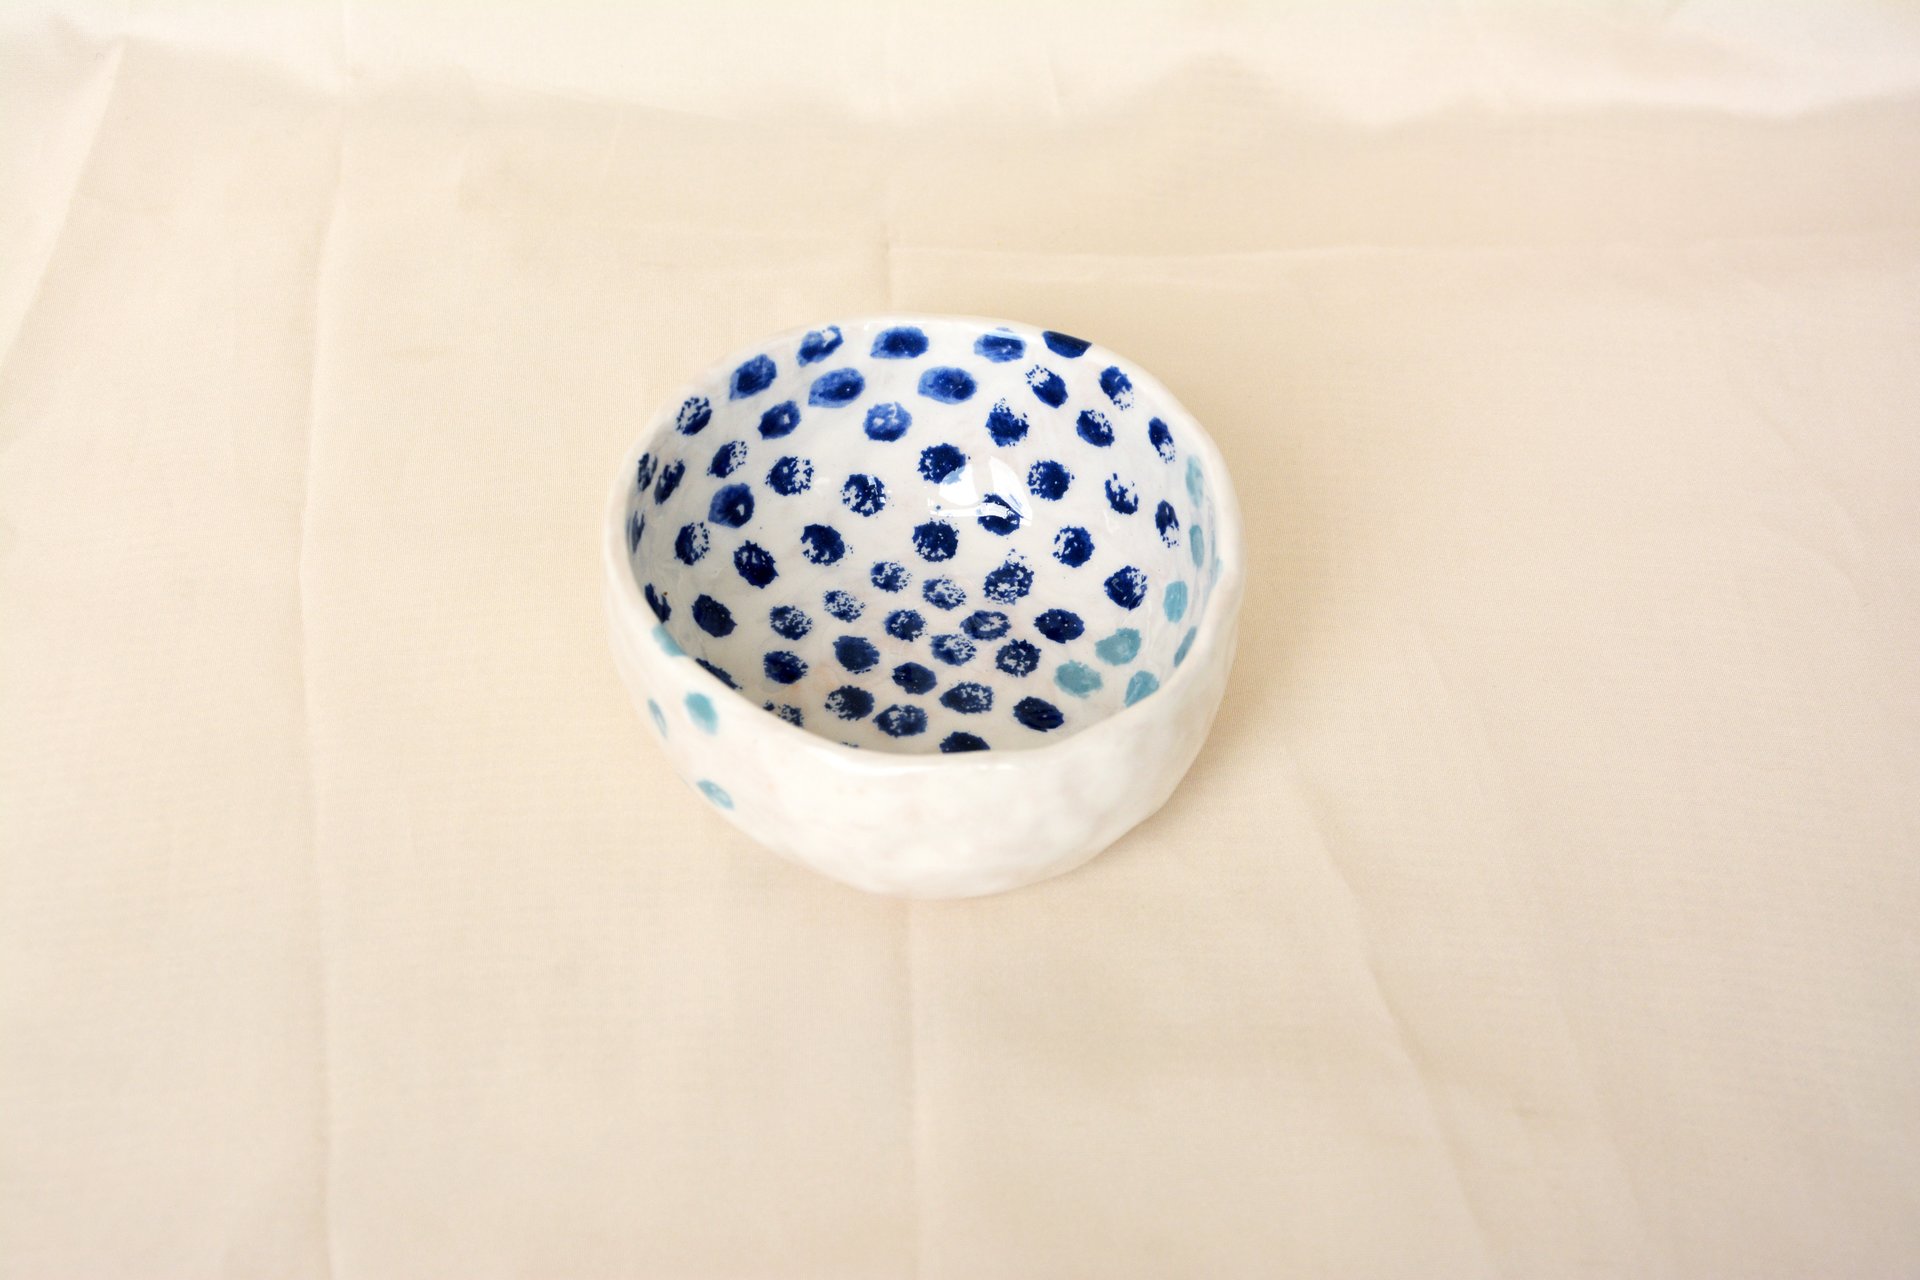 Синие точки на белом - Керамические тарелки, высота - 5 см, диаметр - 11 см, фото 1 из 3.